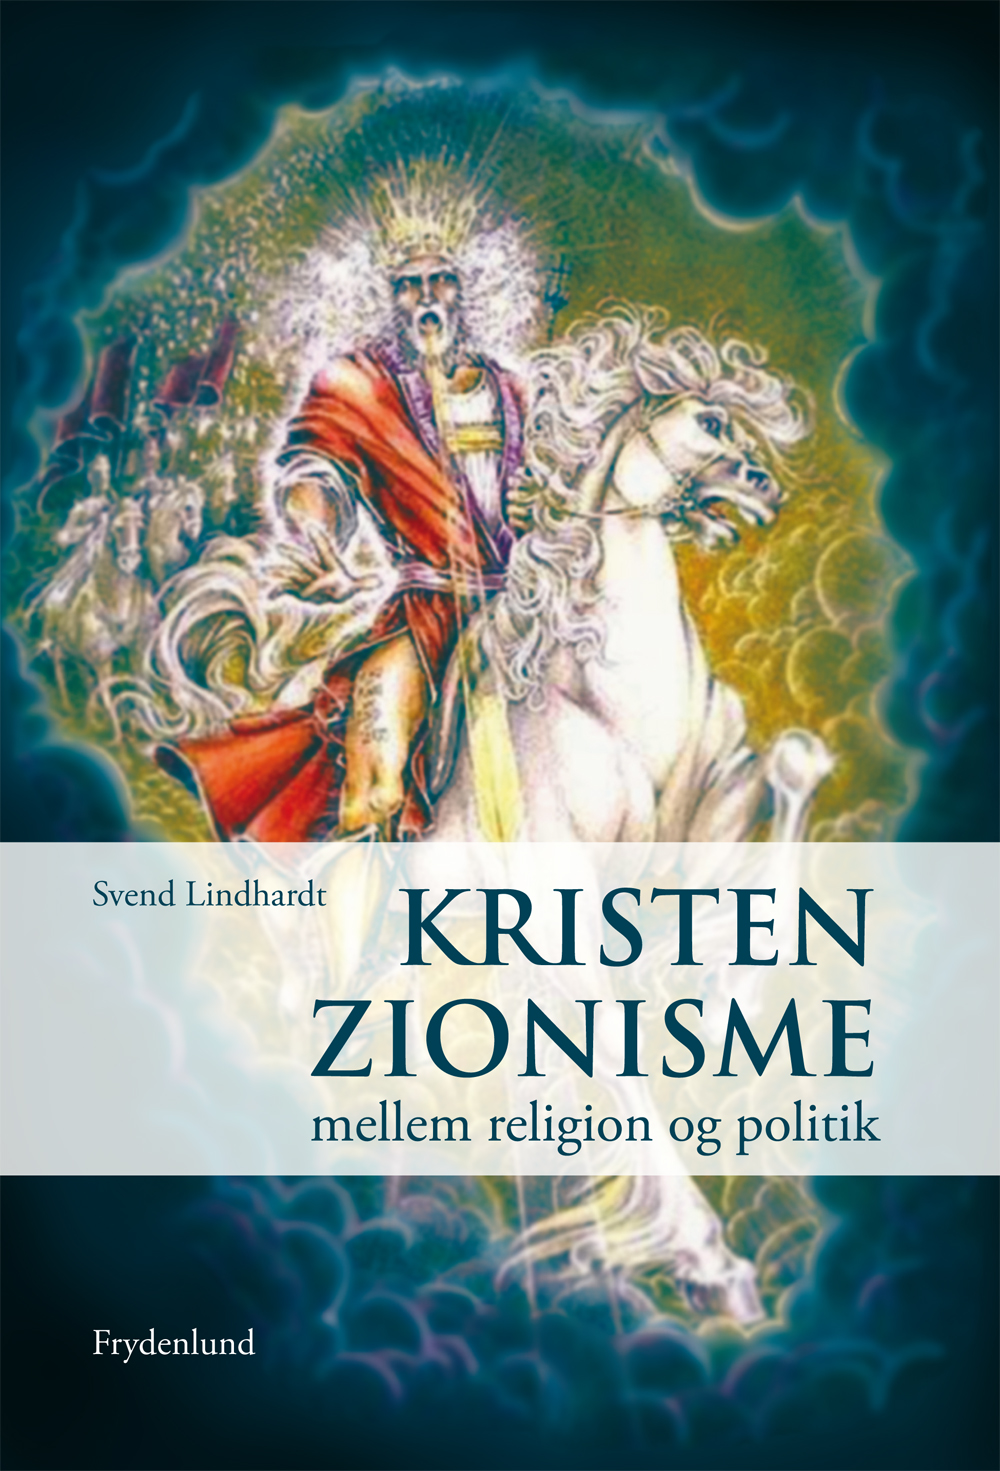 Kristen zionisme : mellem religion og politik